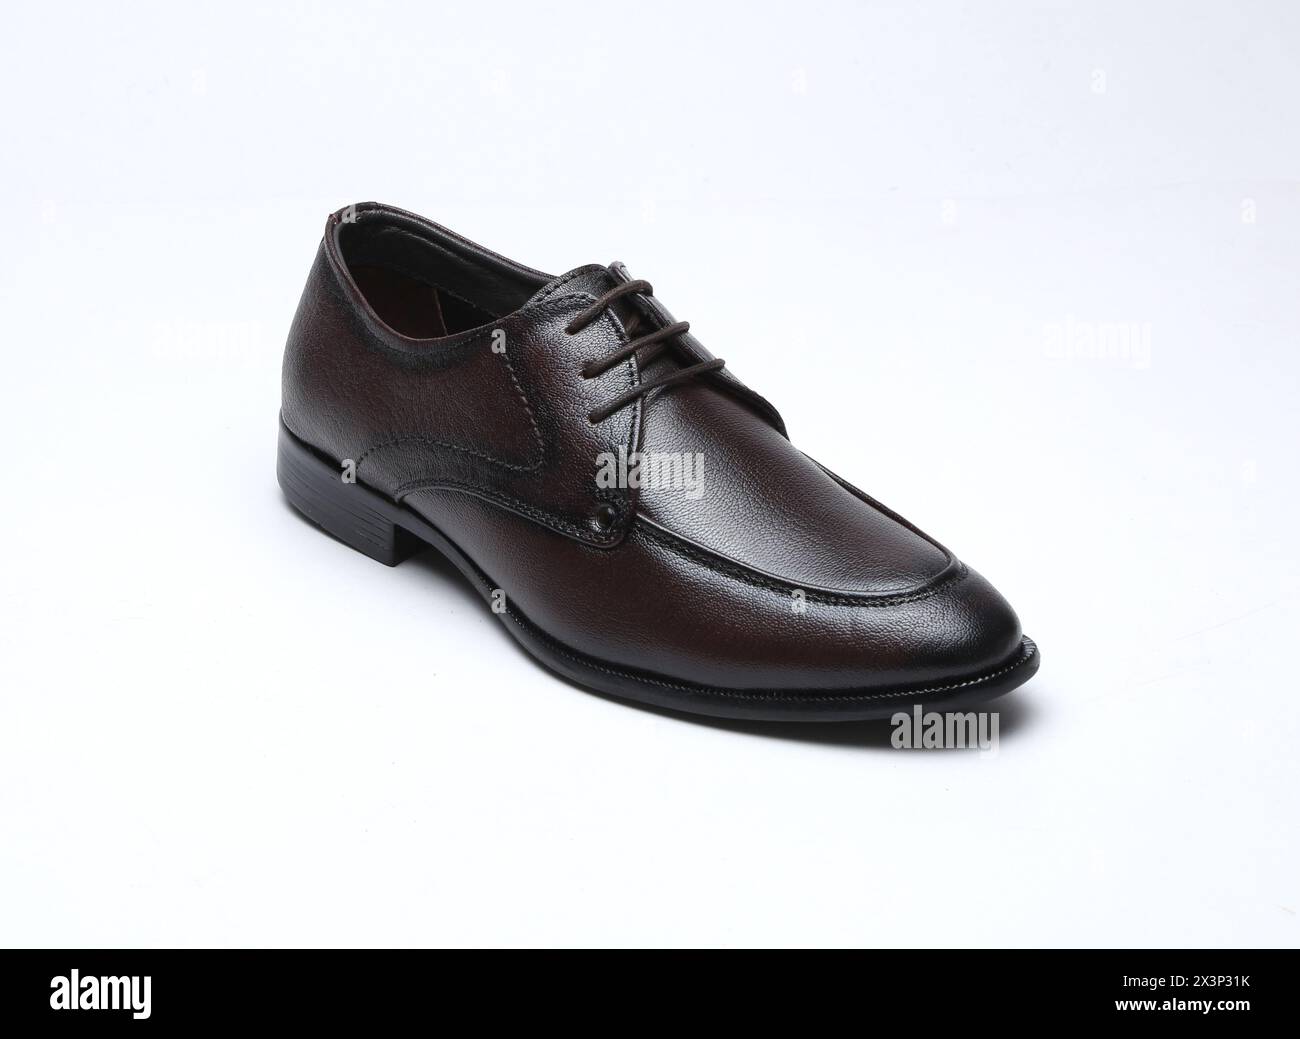 le feste di colore marrone scuro indossano scarpe formali isolate su sfondo bianco Foto Stock